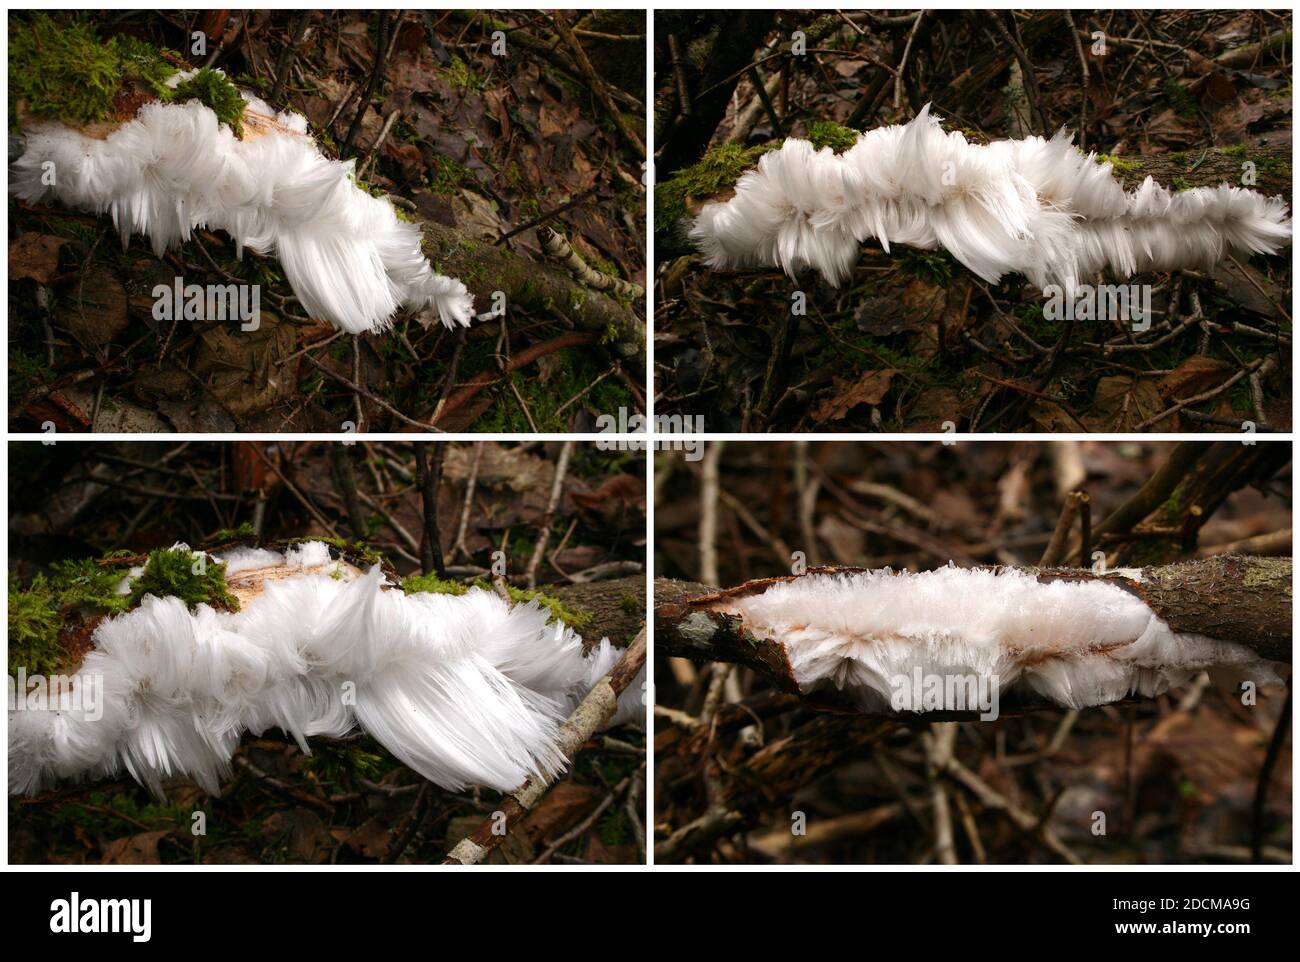 Il ghiaccio dei capelli, la lana di ghiaccio o la barba gelo è un tipo di ghiaccio che si forma su legno morto e prende la forma di strega fine dei capelli setosi causata dal fungo Exidiopsi Foto Stock